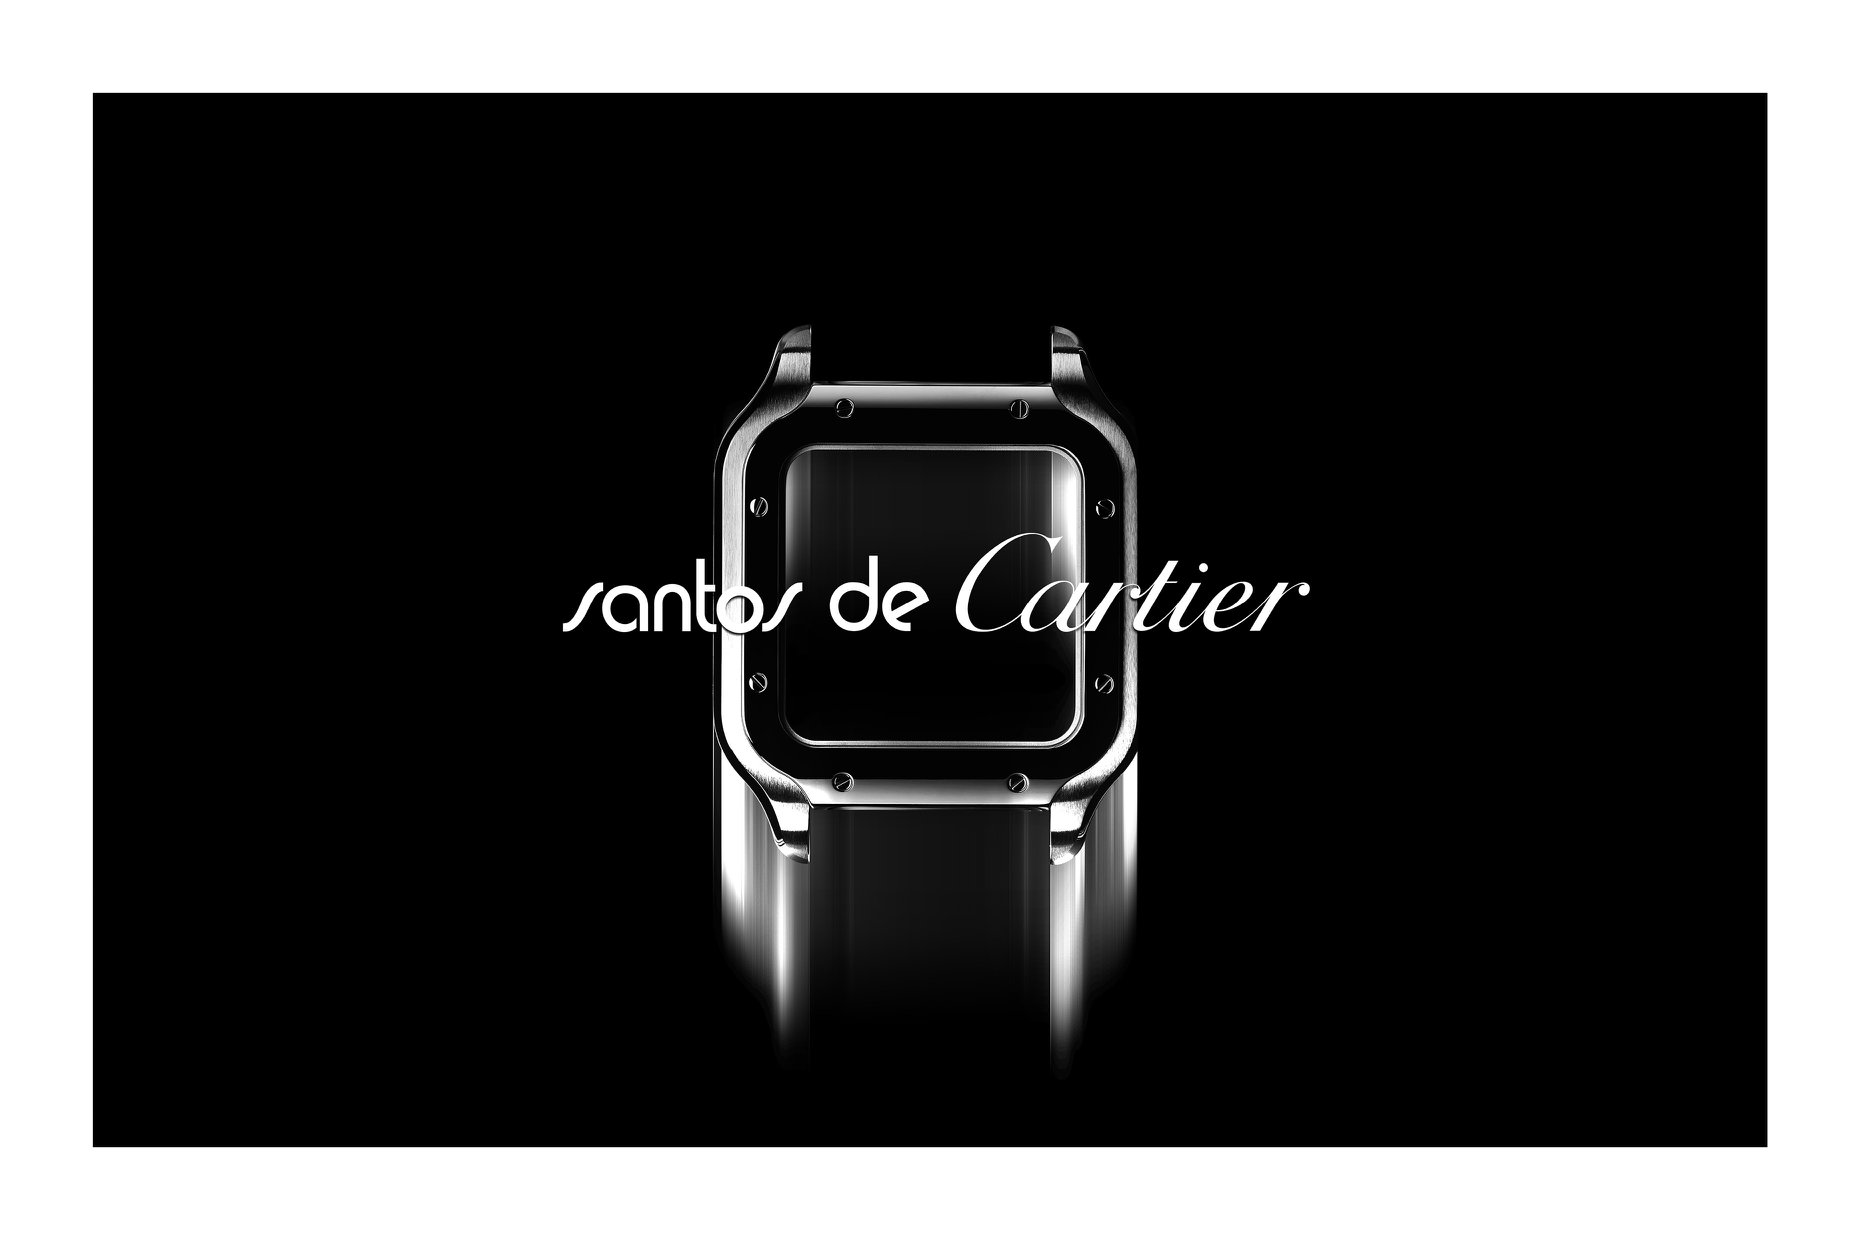 Cartier卡地亞【Santos腕錶　現代男士典範】 與許多其他改變世界的傑出人物一樣，阿爾伯特．山度士–杜蒙（Alberto Santos-Dumont）擁有堅持不懈、特立獨行的卓越精神。 1900年，這位深富遠見的飛行先驅結識了路易．卡地亞（Louis Cartier），兩人的友誼促成了一項嶄新發明。1901年，他對路易．卡地亞表示，在駕駛飛機時無法查看懷錶。三年後，路易．卡地亞為他特別製作了首款佩戴於手腕上的現代腕錶，成就史無前例的製錶創舉。 這款誕生於1904年的腕錶可謂路易．卡地亞與阿爾伯特．山度士–杜蒙兩位先鋒大膽探索的劃時代結晶。 飛行員阿爾伯特，山度士-杜蒙（Alberto Santos-Dumont）大膽創新，他征服天空、精益求精、對抗重力的先驅精神，是全新Santos de Cartier系列的靈感來源。全新系列承襲阿爾伯特・山度士-杜蒙等改變世界的人士所具備的精神、作風、態度。簡約、實用、創新是阿爾伯特・山度士-杜蒙的三大主要原則，1904年，這位航空先驅向路易・卡地亞（Louis Cartier）訂購首枚搭配錶帶的現代腕